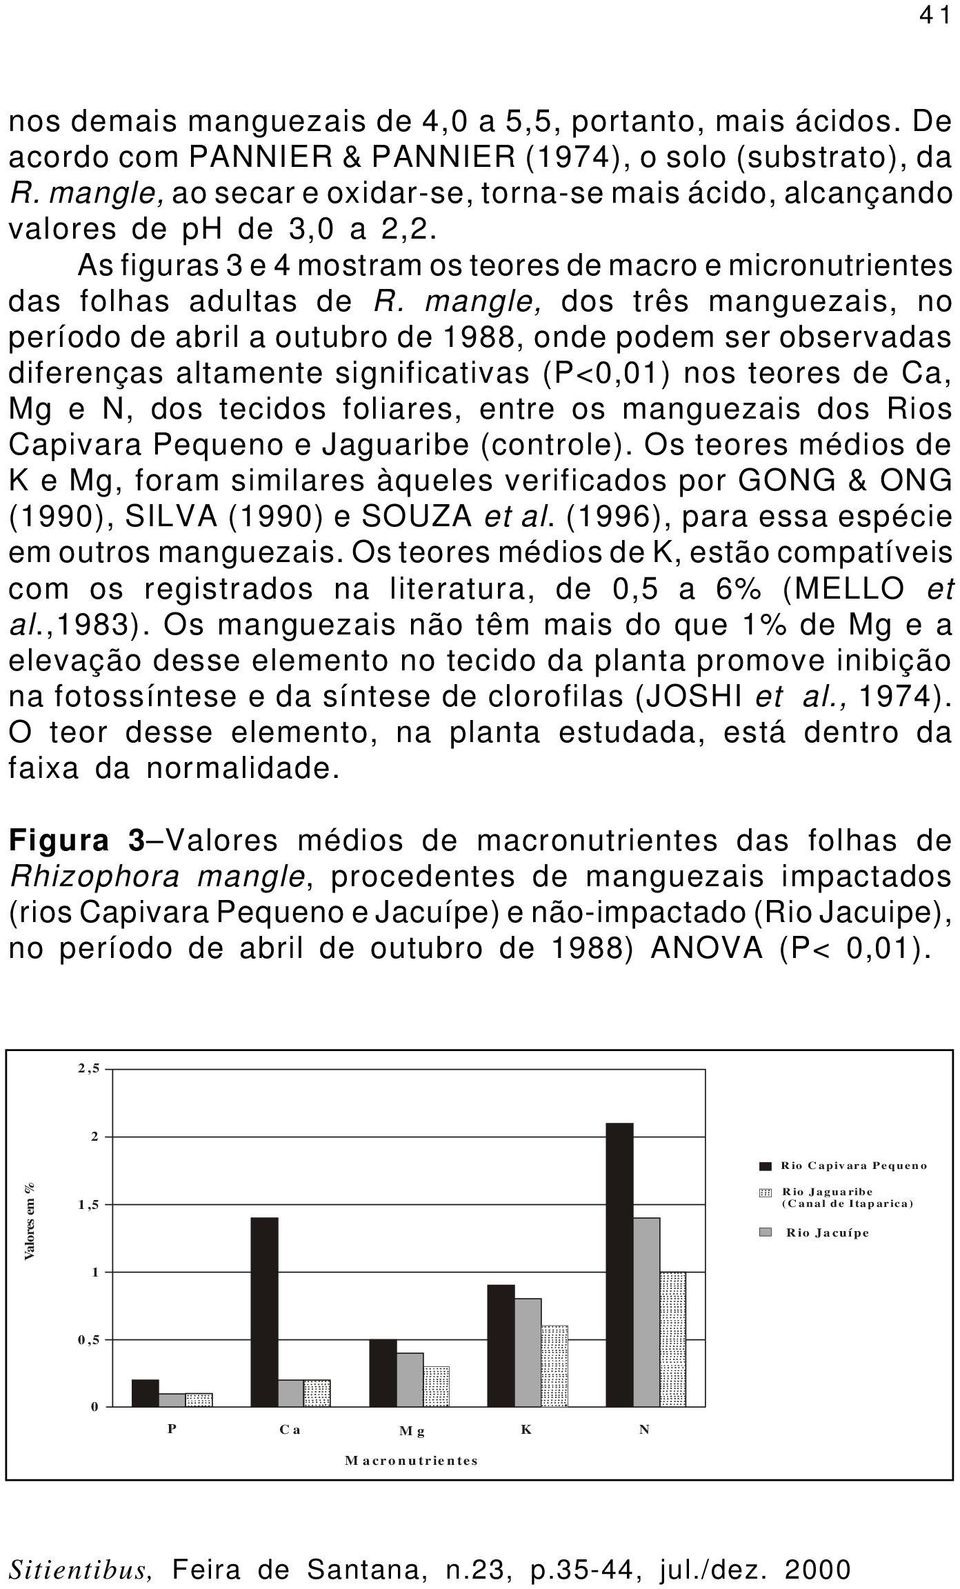 mangle, dos três manguezais, no período de abril a outubro de 1988, onde podem ser observadas diferenças altamente significativas (P<0,01) nos teores de Ca, Mg e N, dos tecidos foliares, entre os